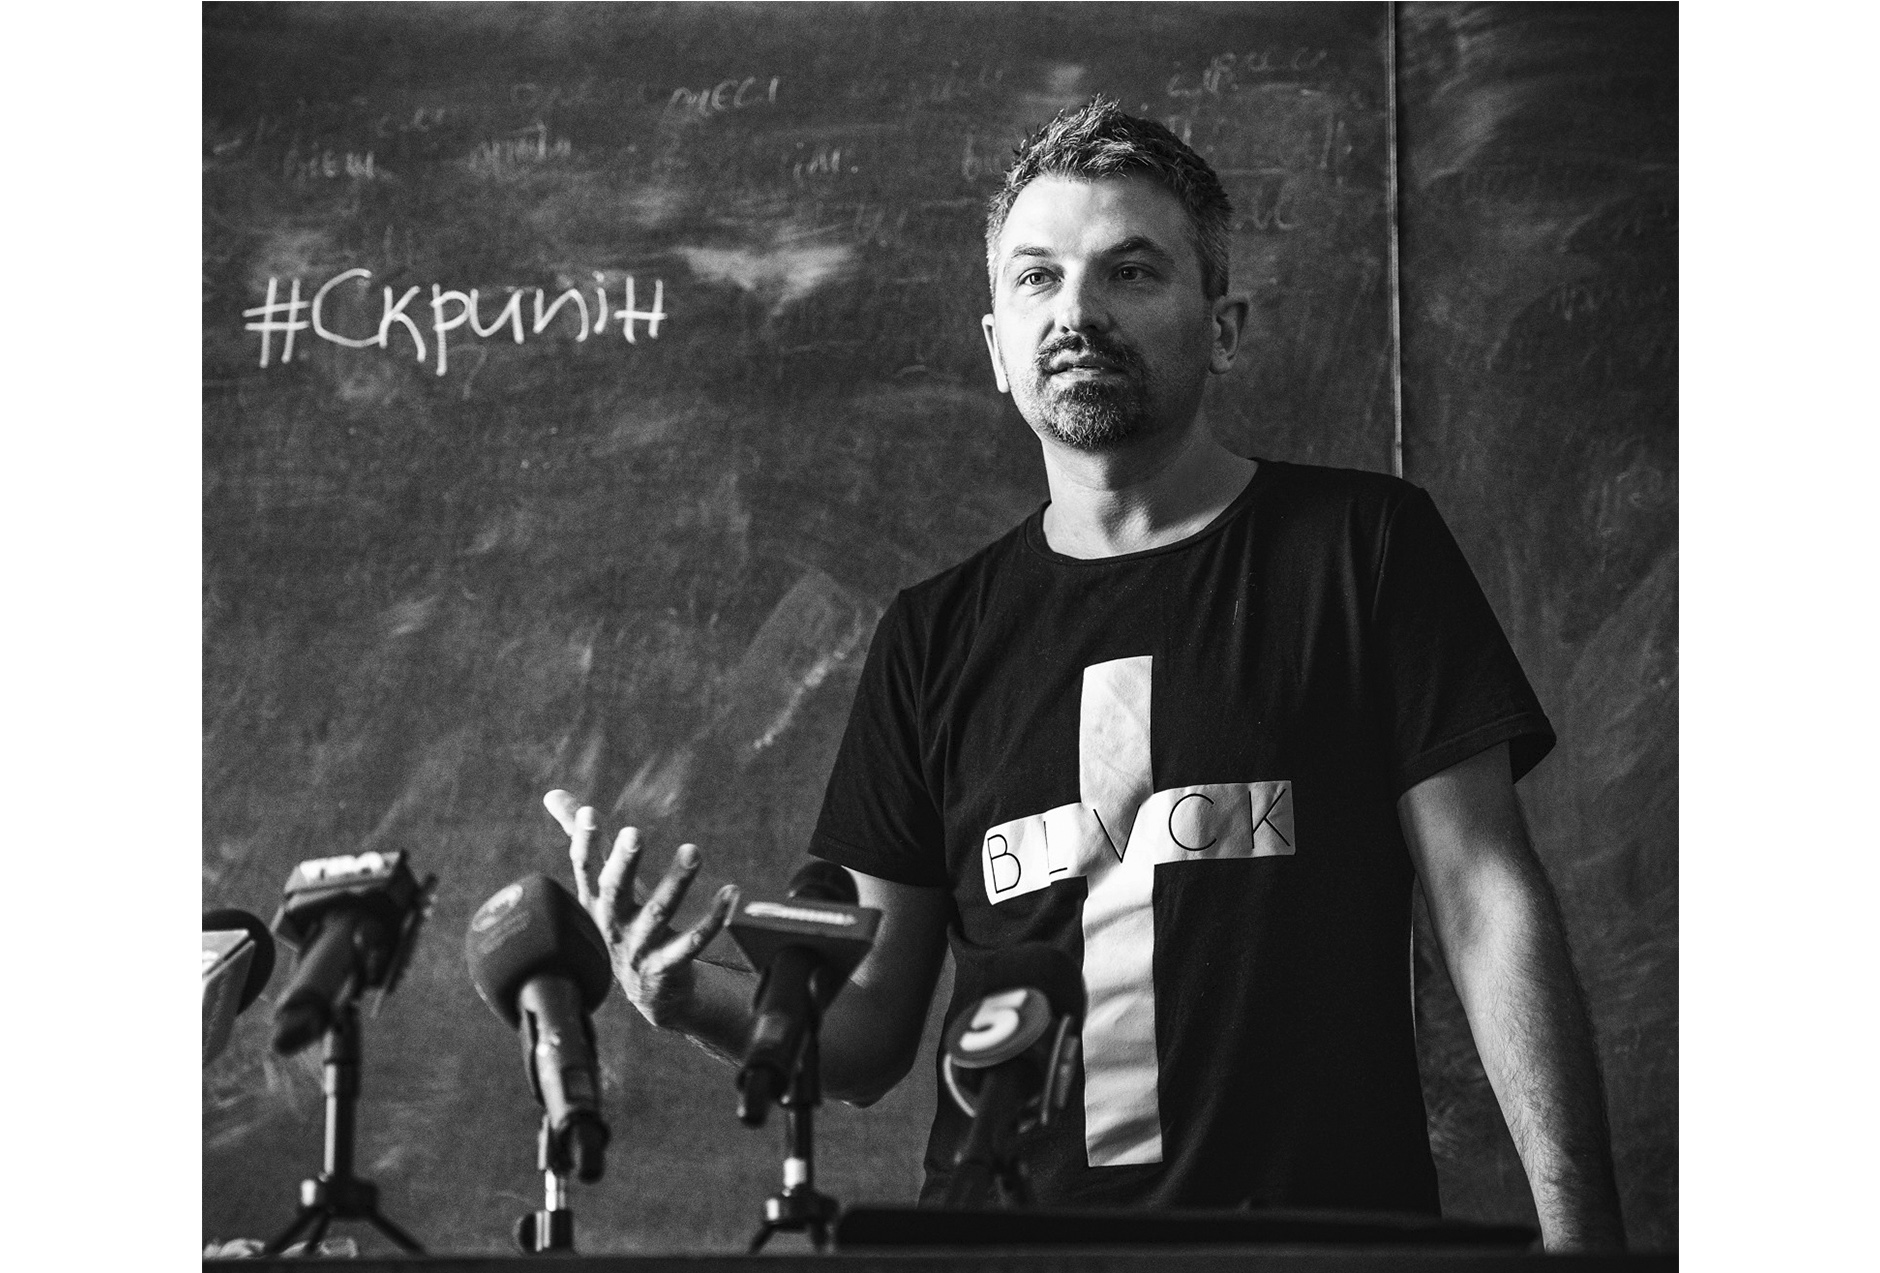 Роман Скрыпин (Украина) – журналист,   учредитель Громадске телевидение